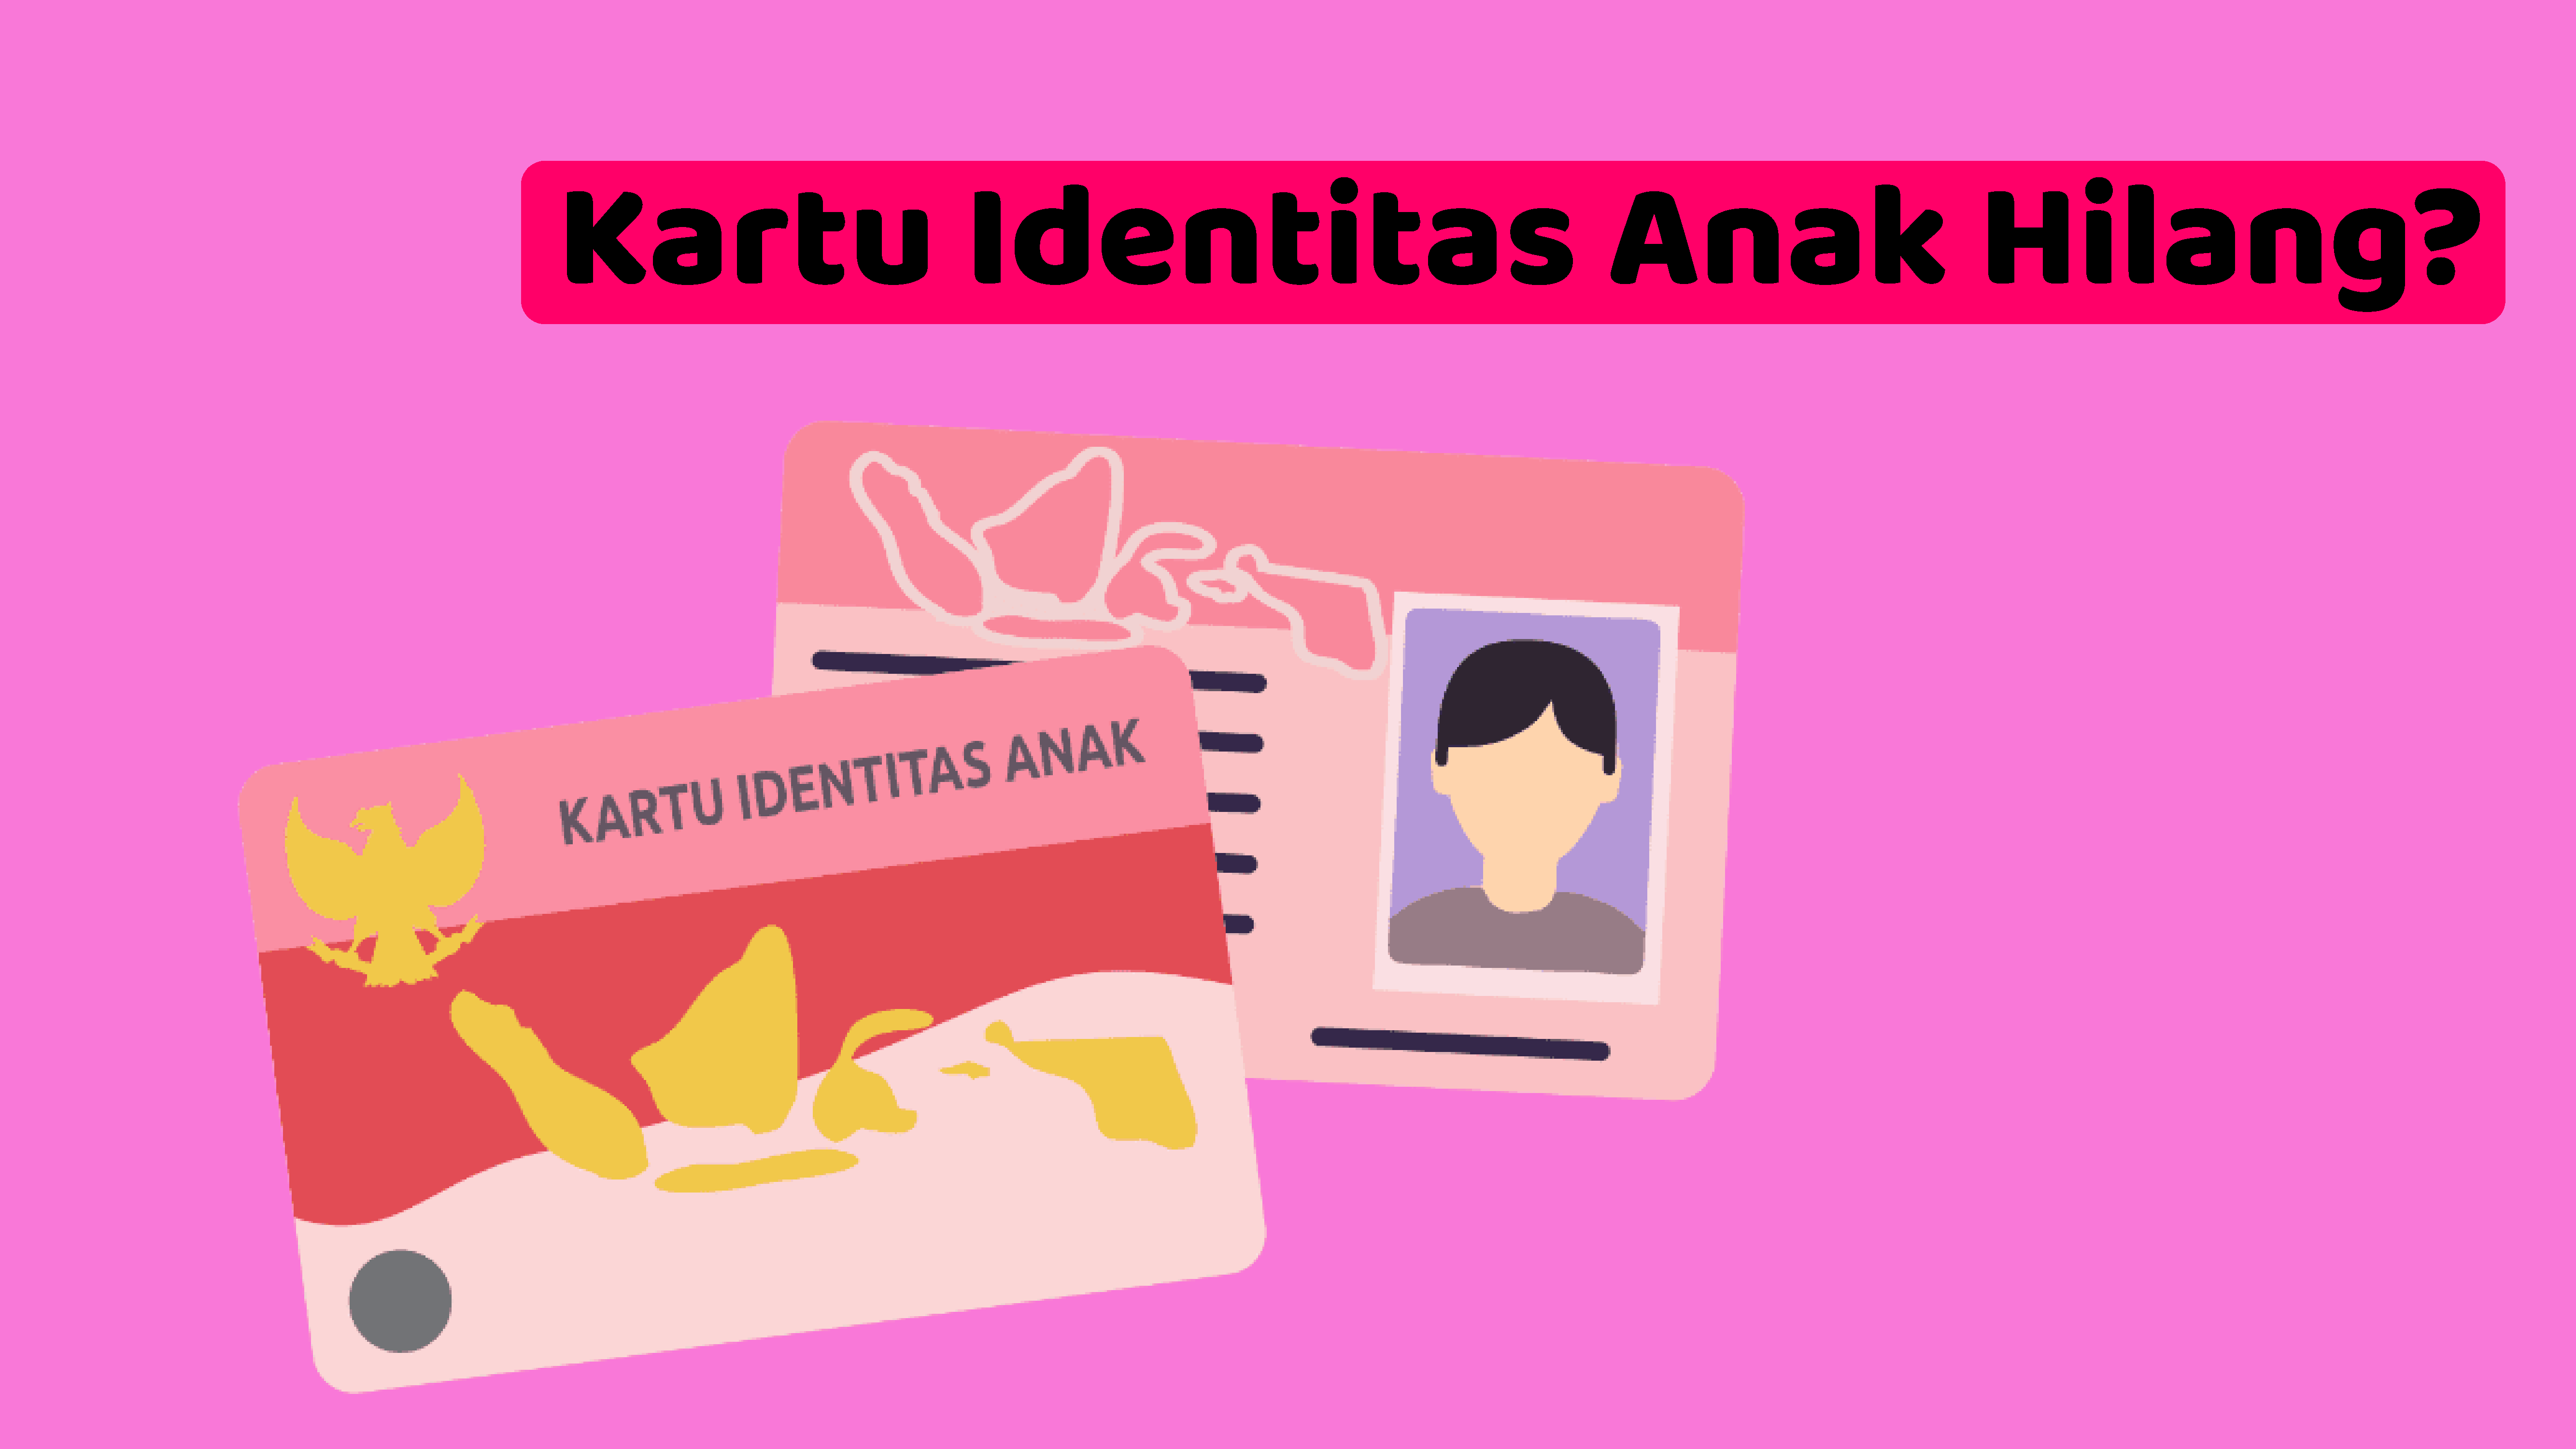 Kartu Identitas Anak Hilang? Begini Solusi Untuk Mengurusnya 2021 - Rtpintar Blog